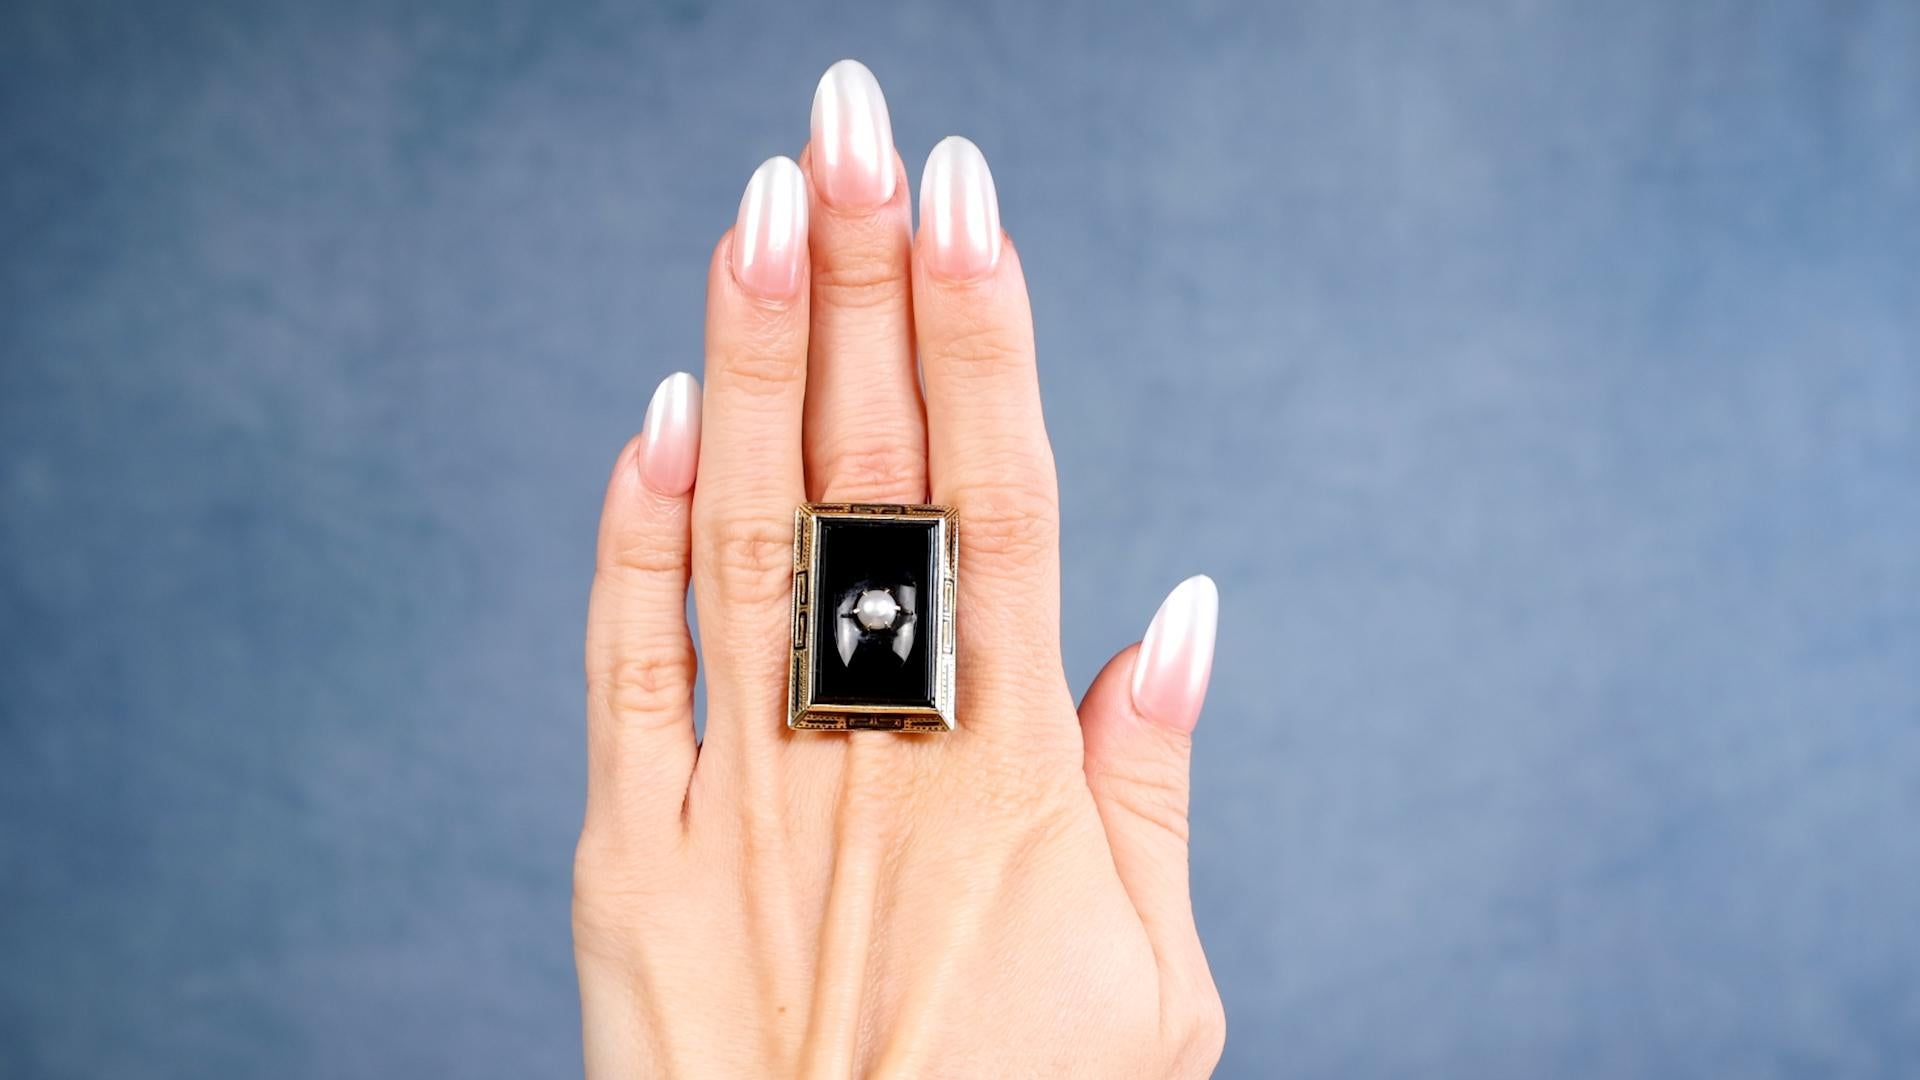 Ein Art Deco Onyx Perle 14k Gelbgold Ring. Ausgestattet mit einem Stück poliertem Onyx und einer weißen Perle von 5,10 Millimetern. Gefertigt aus 14 Karat Gelbgold mit Feingehaltsangabe. Ca. 1920. Der Ring hat die Größe 6 ¾ und kann in der Größe